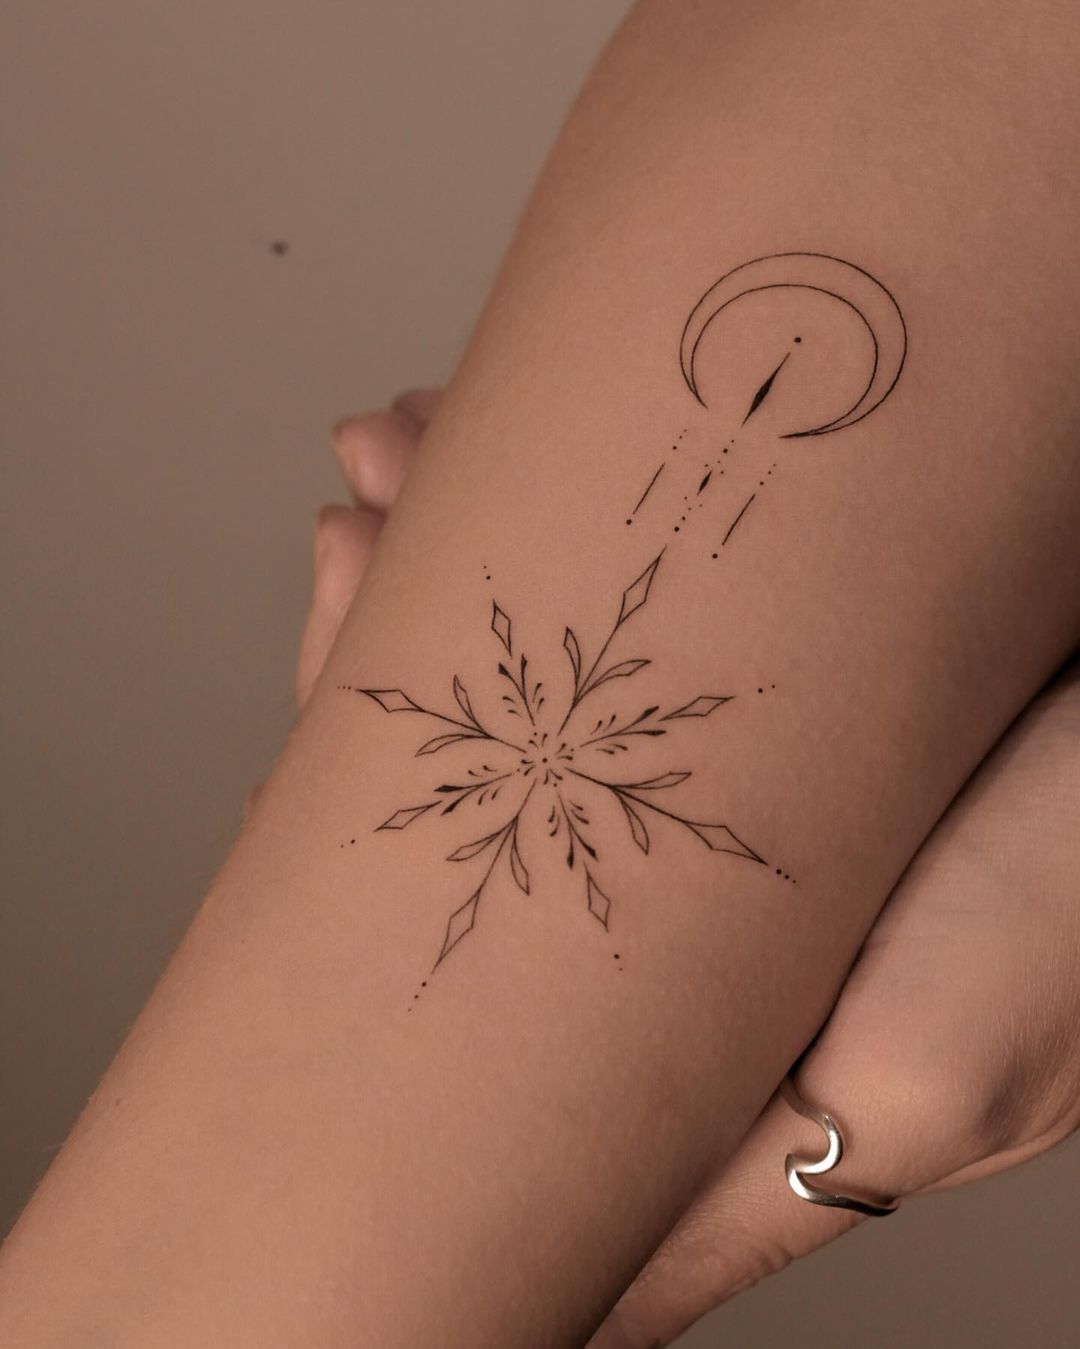 Snowflake tattoo ideas by sl0w.ttt